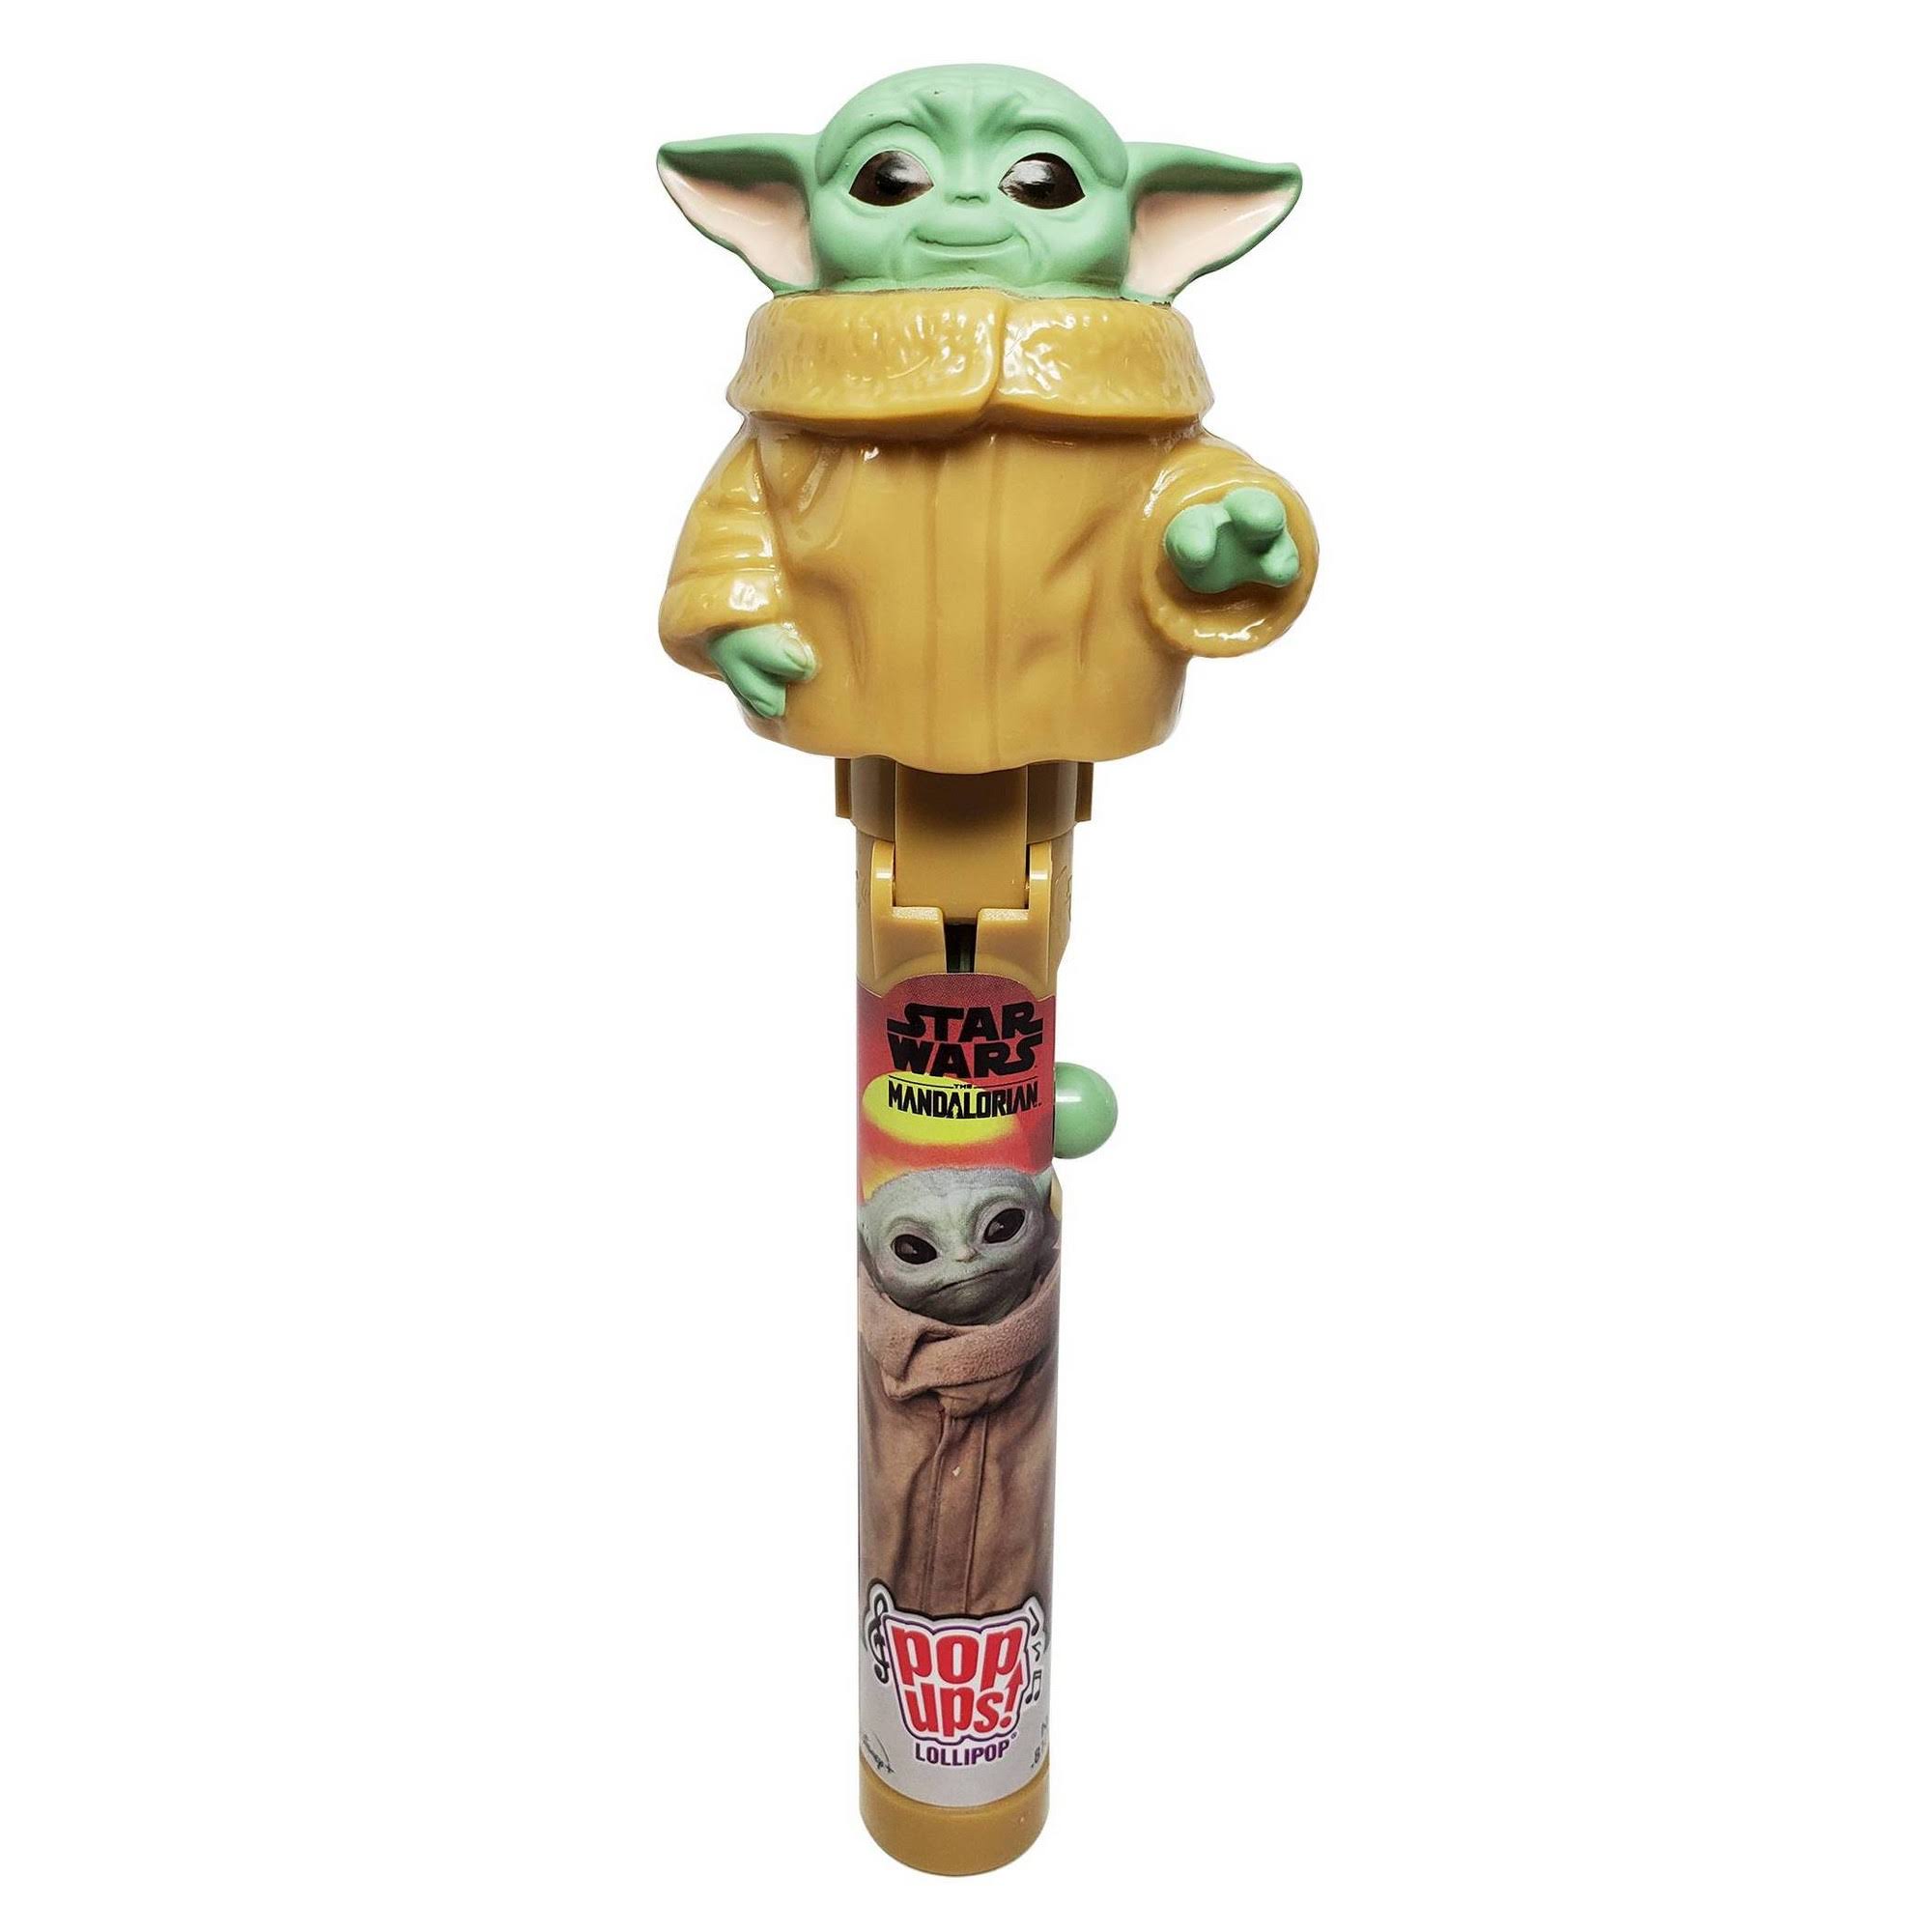 Star Wars Pop Ups Talking Baby Yoda Lollipop Holder with Lollipop